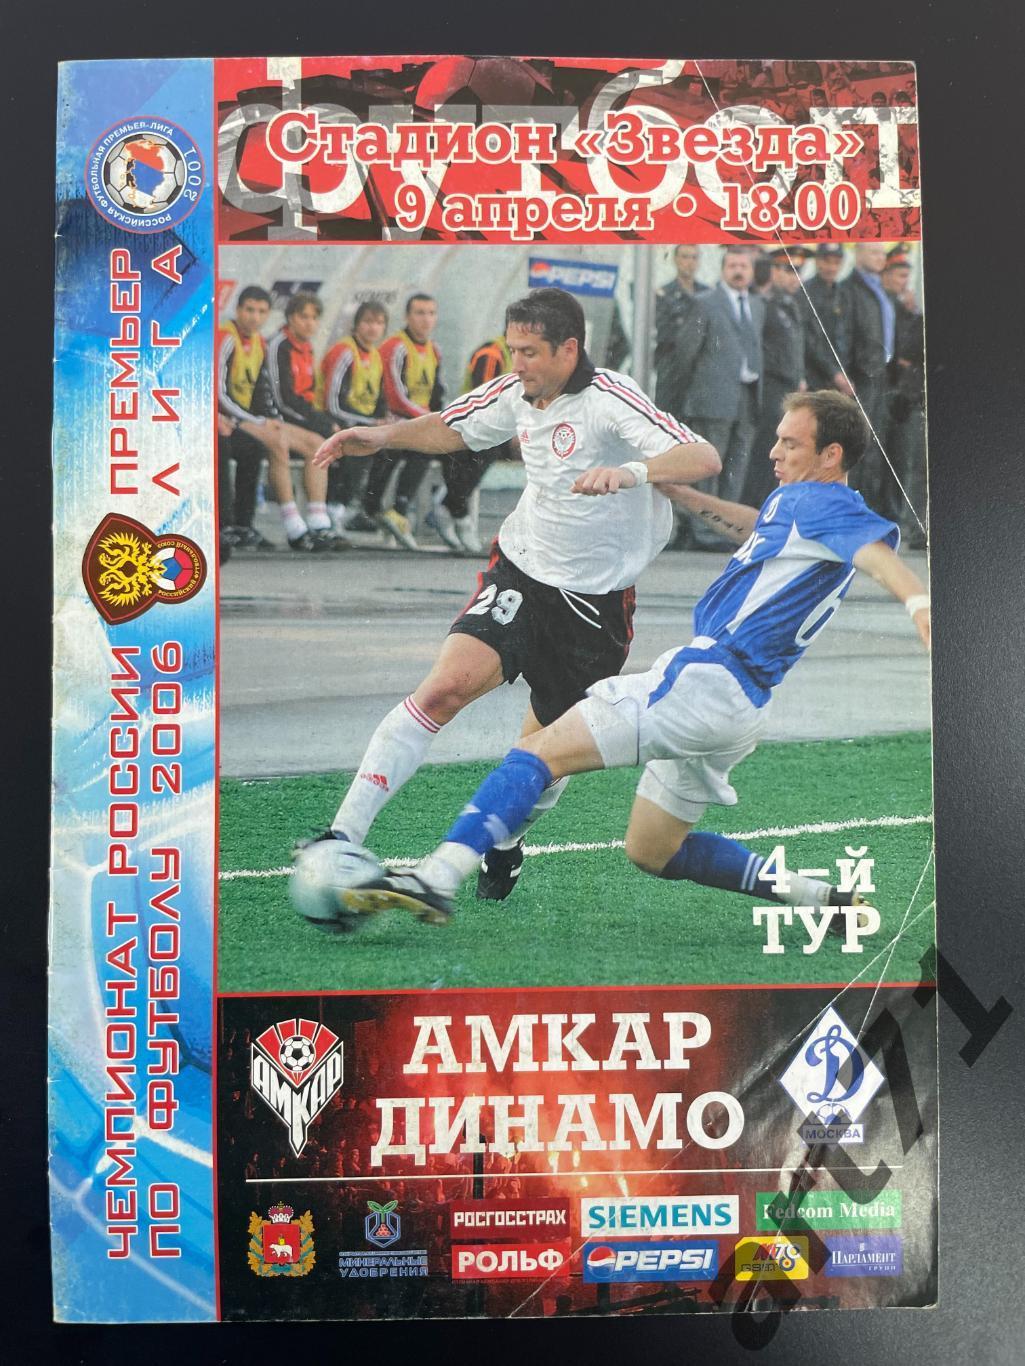 Амкар Пермь - Динамо Москва 2006